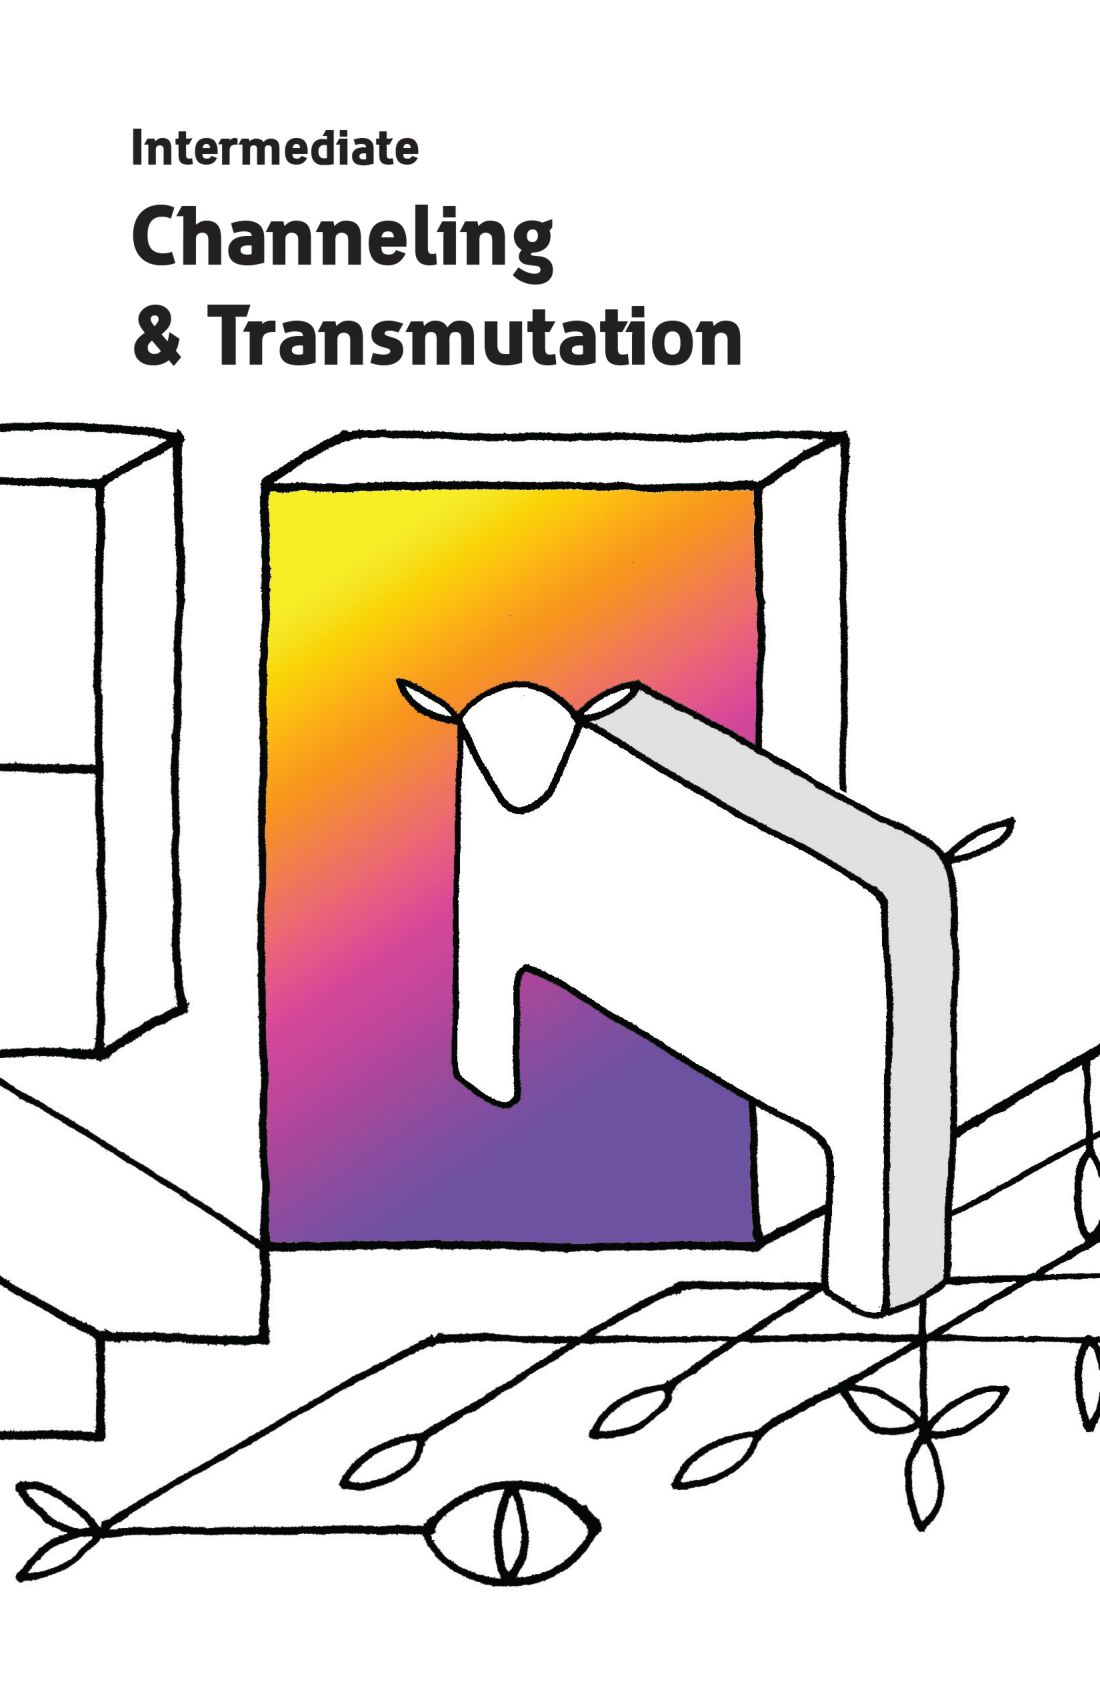 Intermediate Channeling & Transmutation